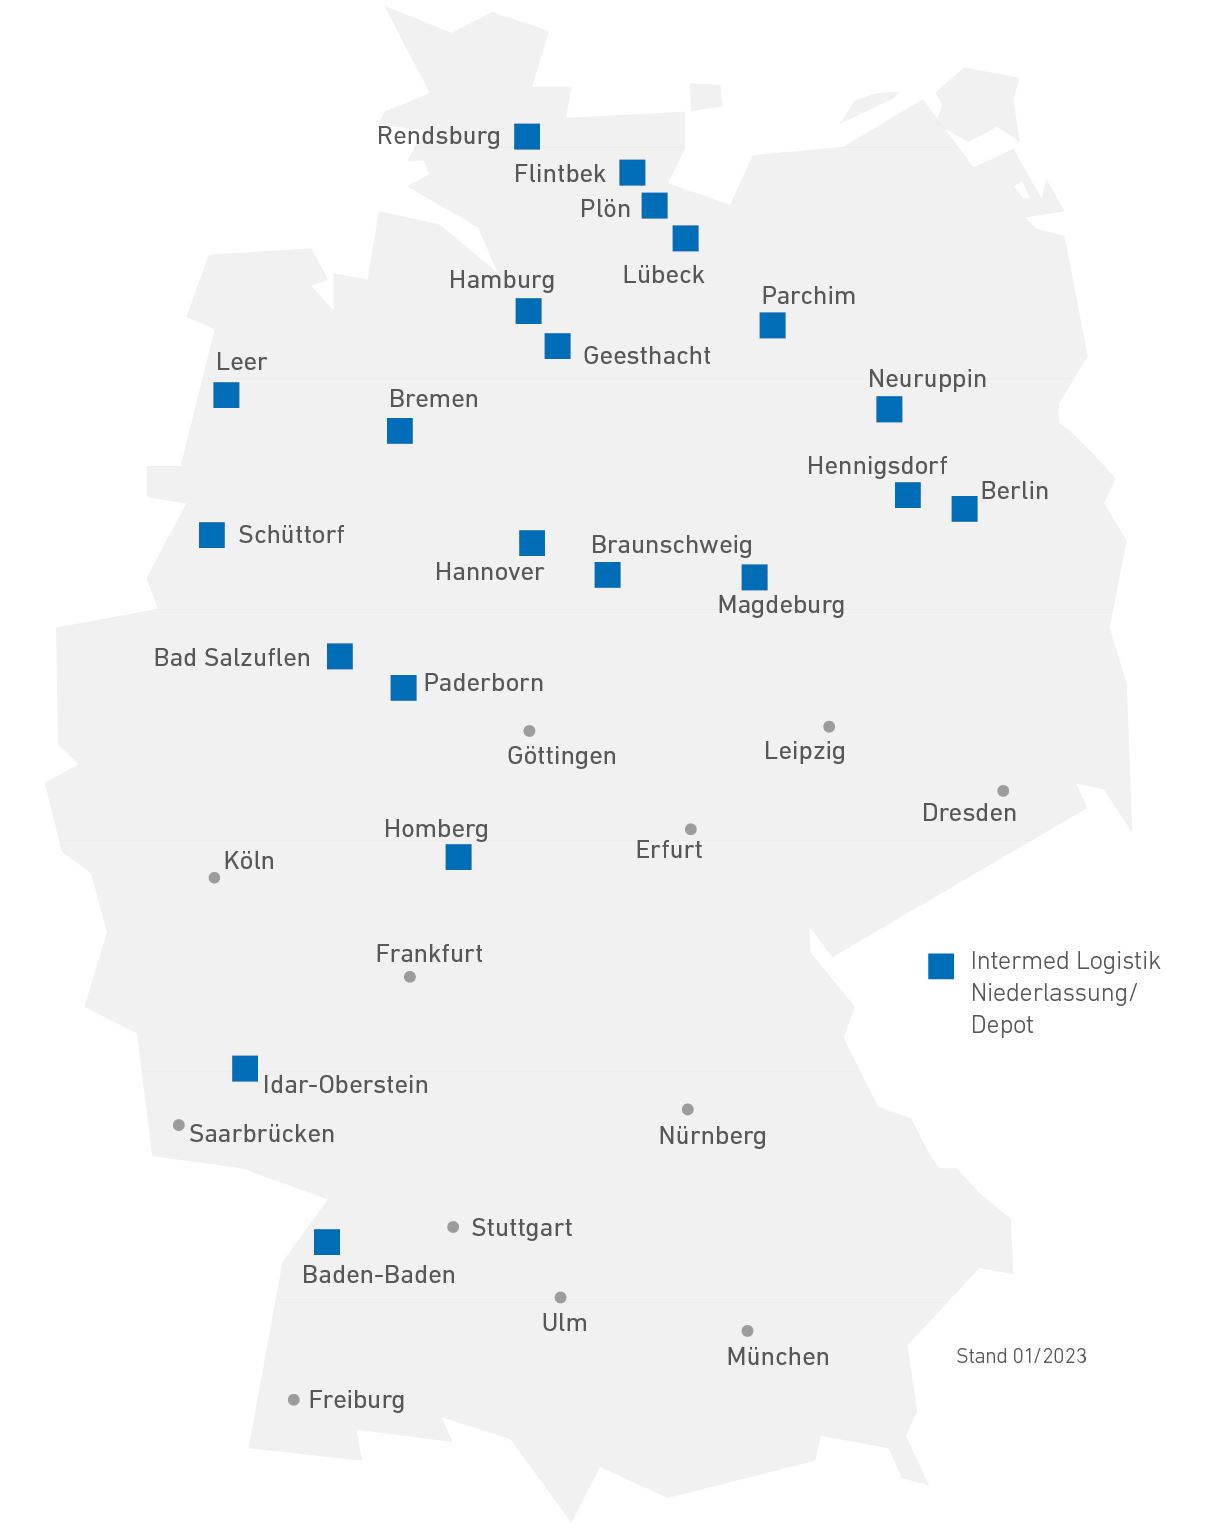 Intermed Logistik Niederlassungen in Deutschland